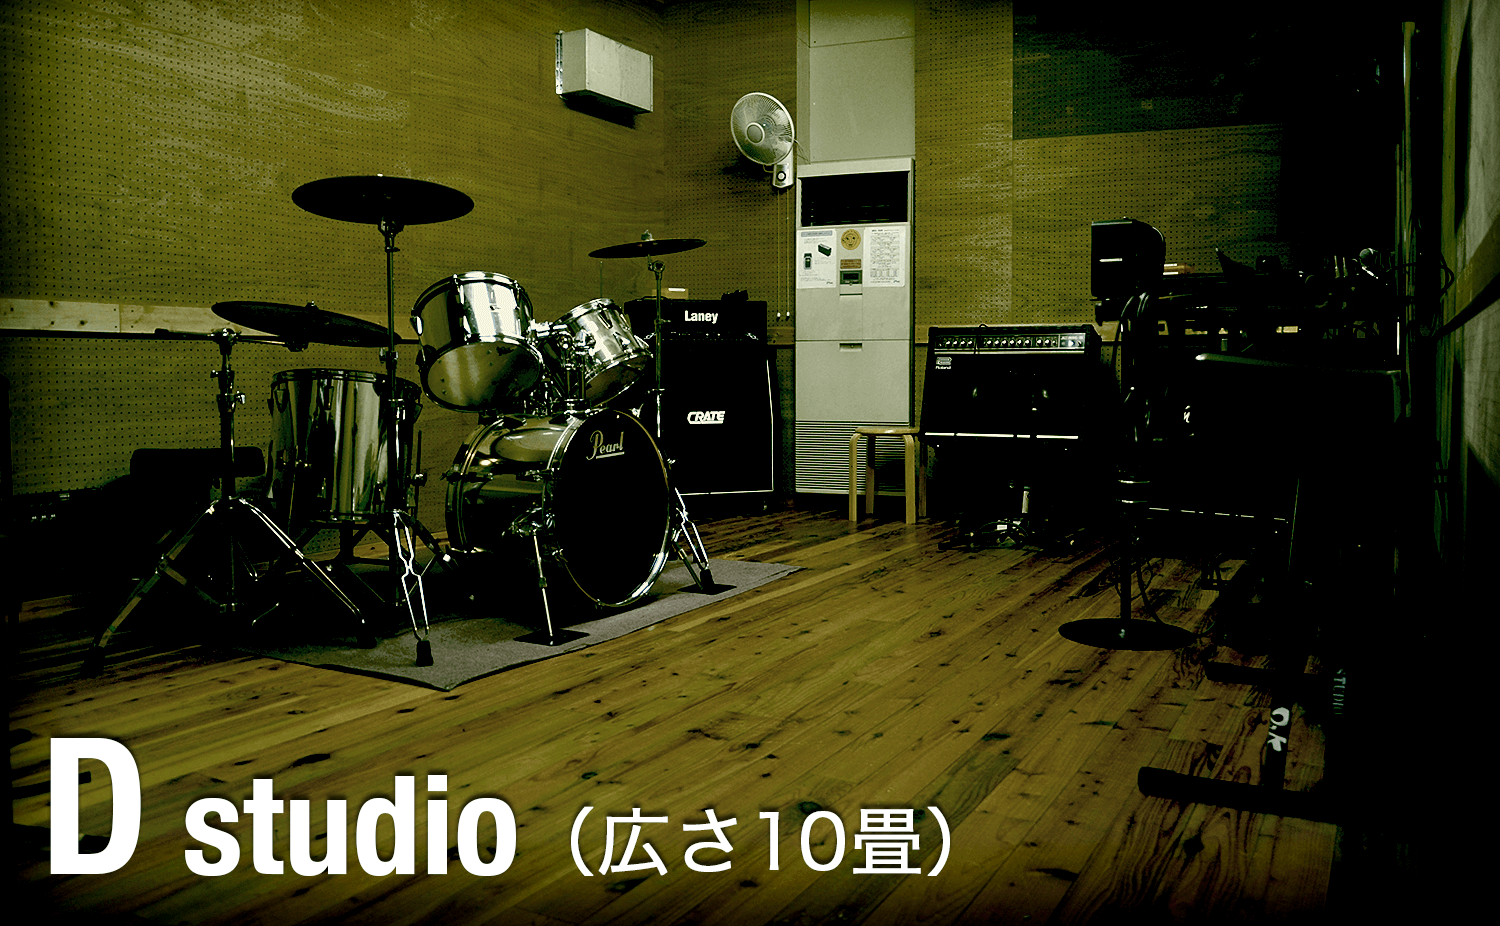 STUDIO O&K 裾野店 Dスタジオ